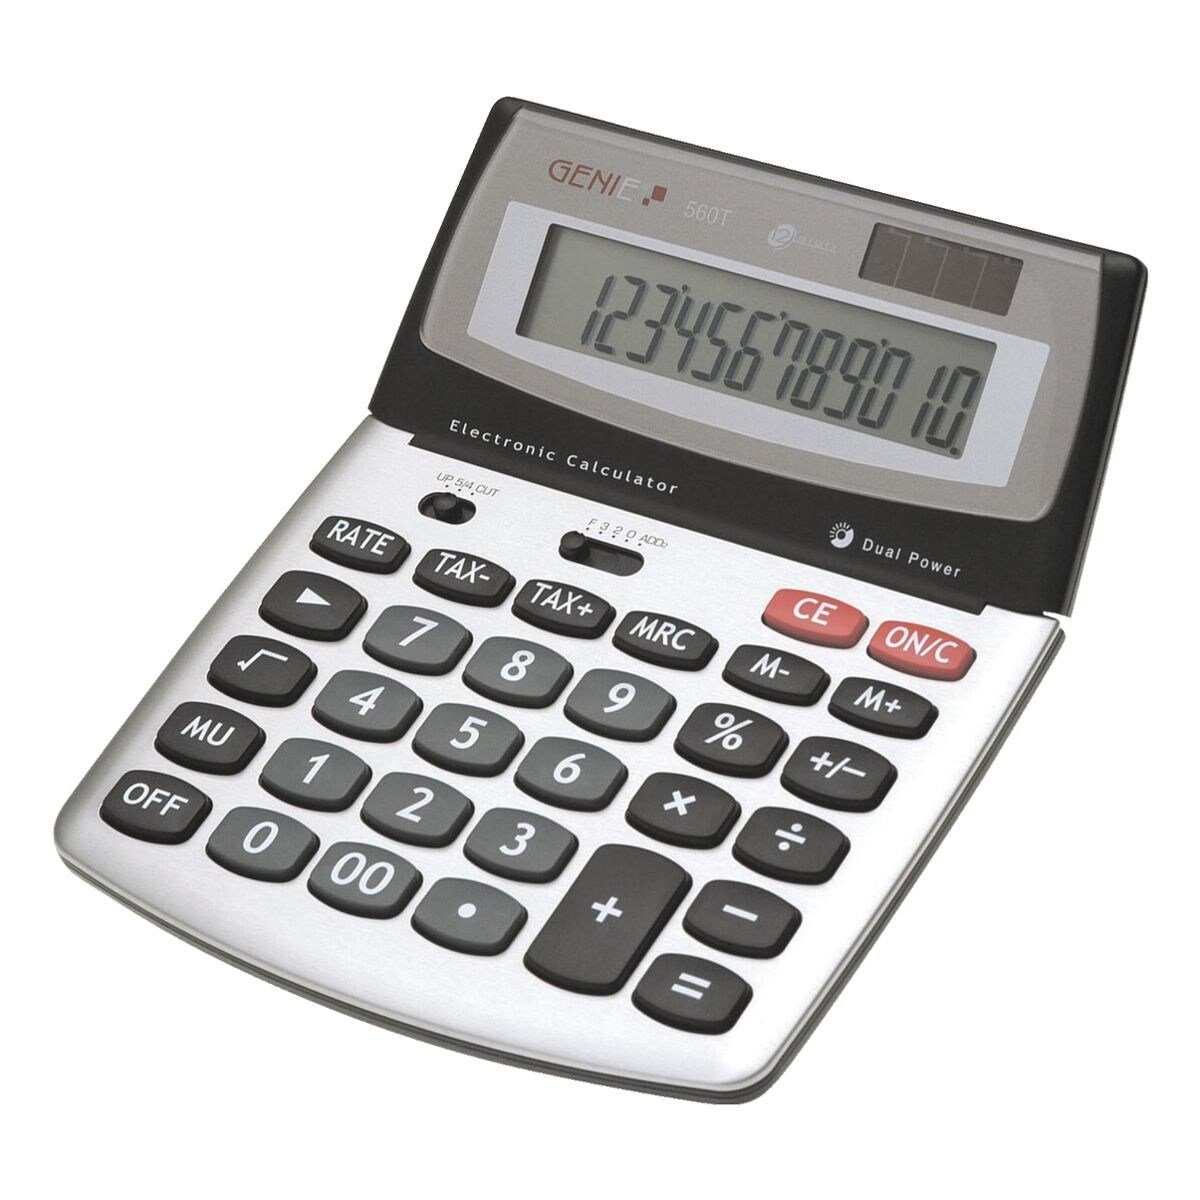 GENIE Taschenrechner Taschenrechner 560 T, 12-stellig, Solar + Batterie,  TAX, Steuerberechnung, silber/grau